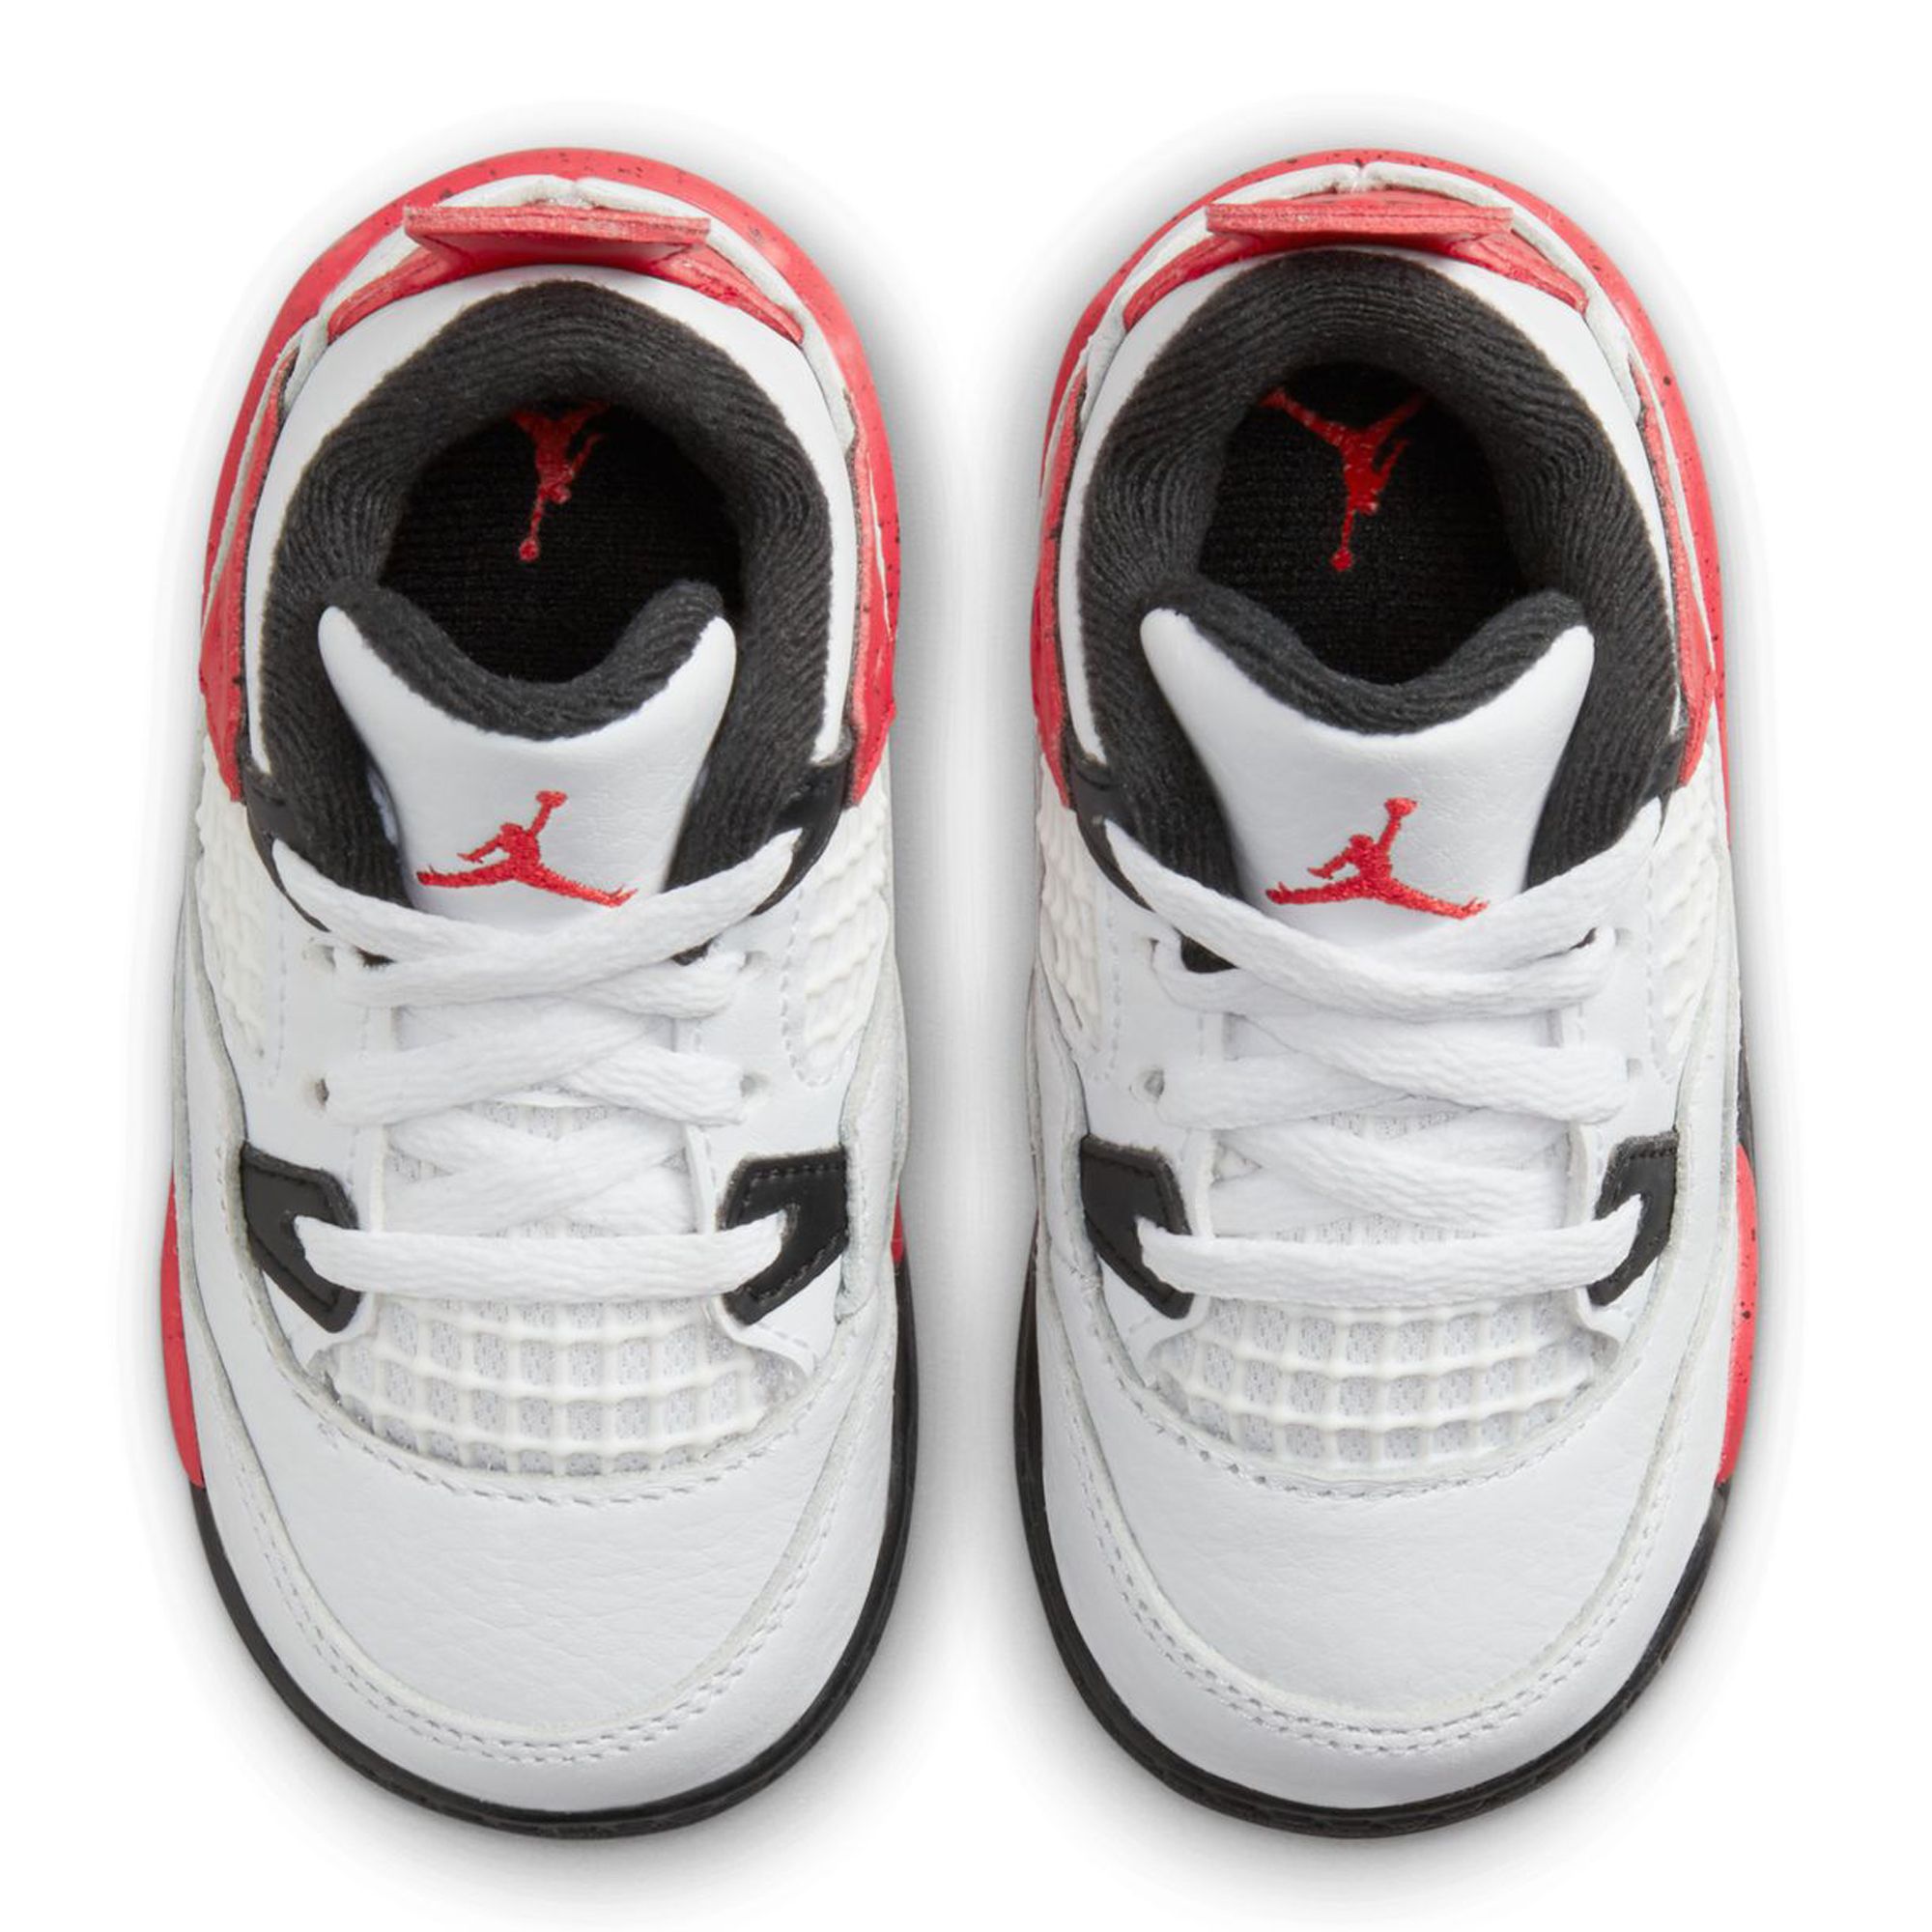 Air Jordan 4 Retro Pale Citron Sneakers